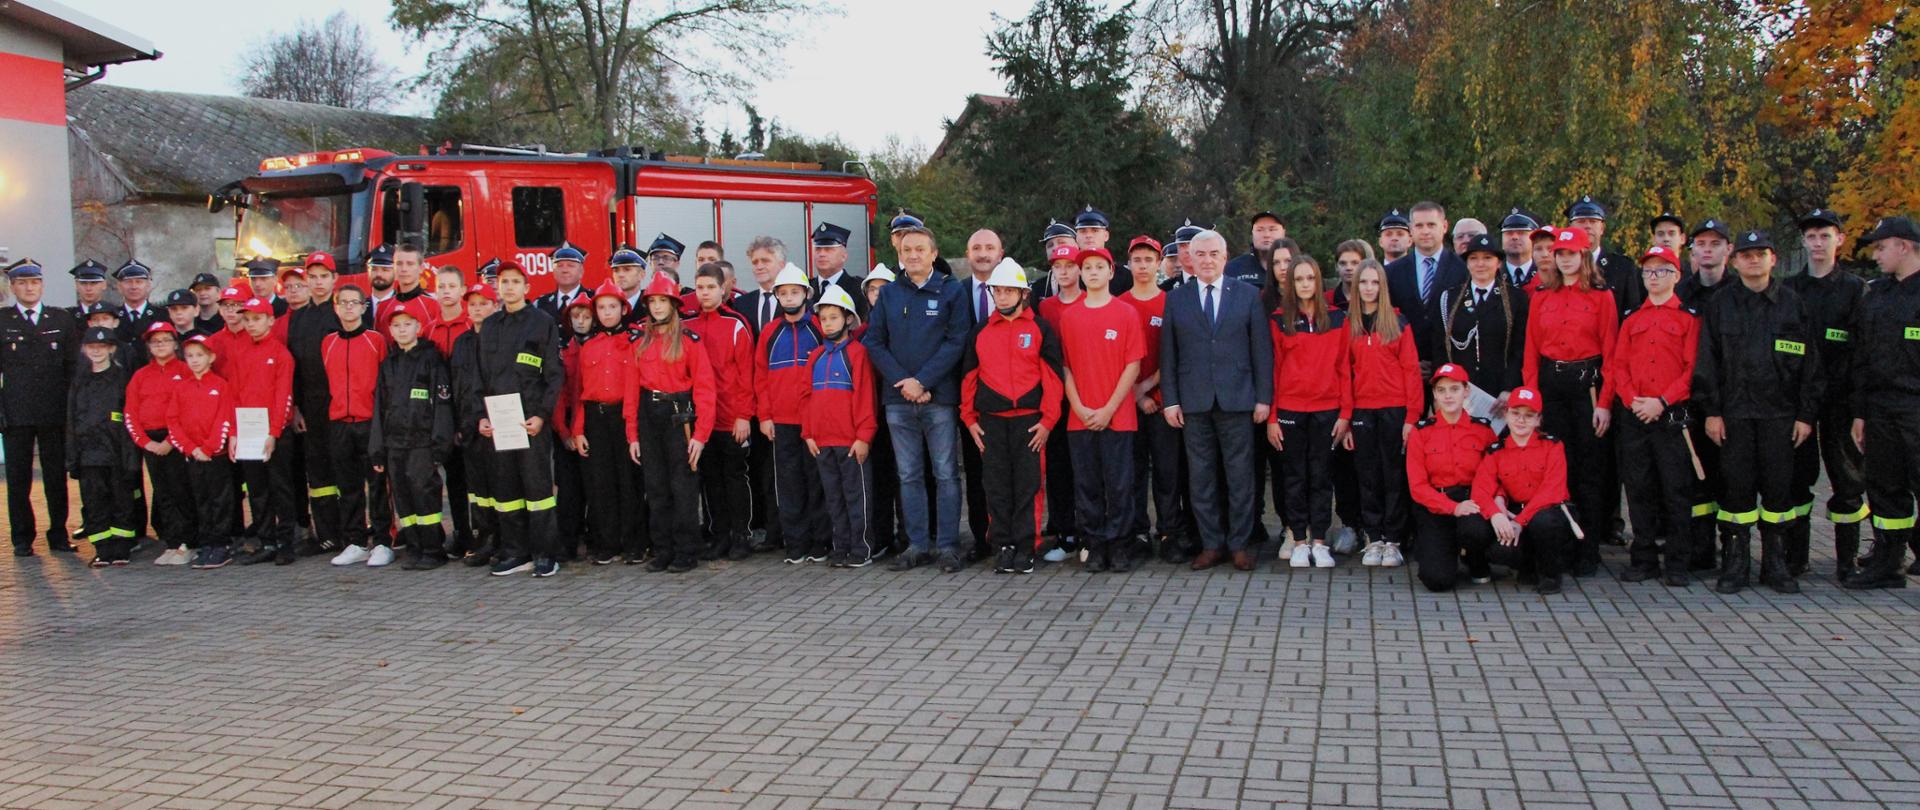 Zdjęcie przedstawia zaproszonych gości i organizatorów wśród przedstawicieli Młodzieżowych Drużyn Pożarniczych i ich opiekunów oraz prezesów ochotniczych straży pożarnych na pamiątkowym ustawieniu podczas uroczystości.